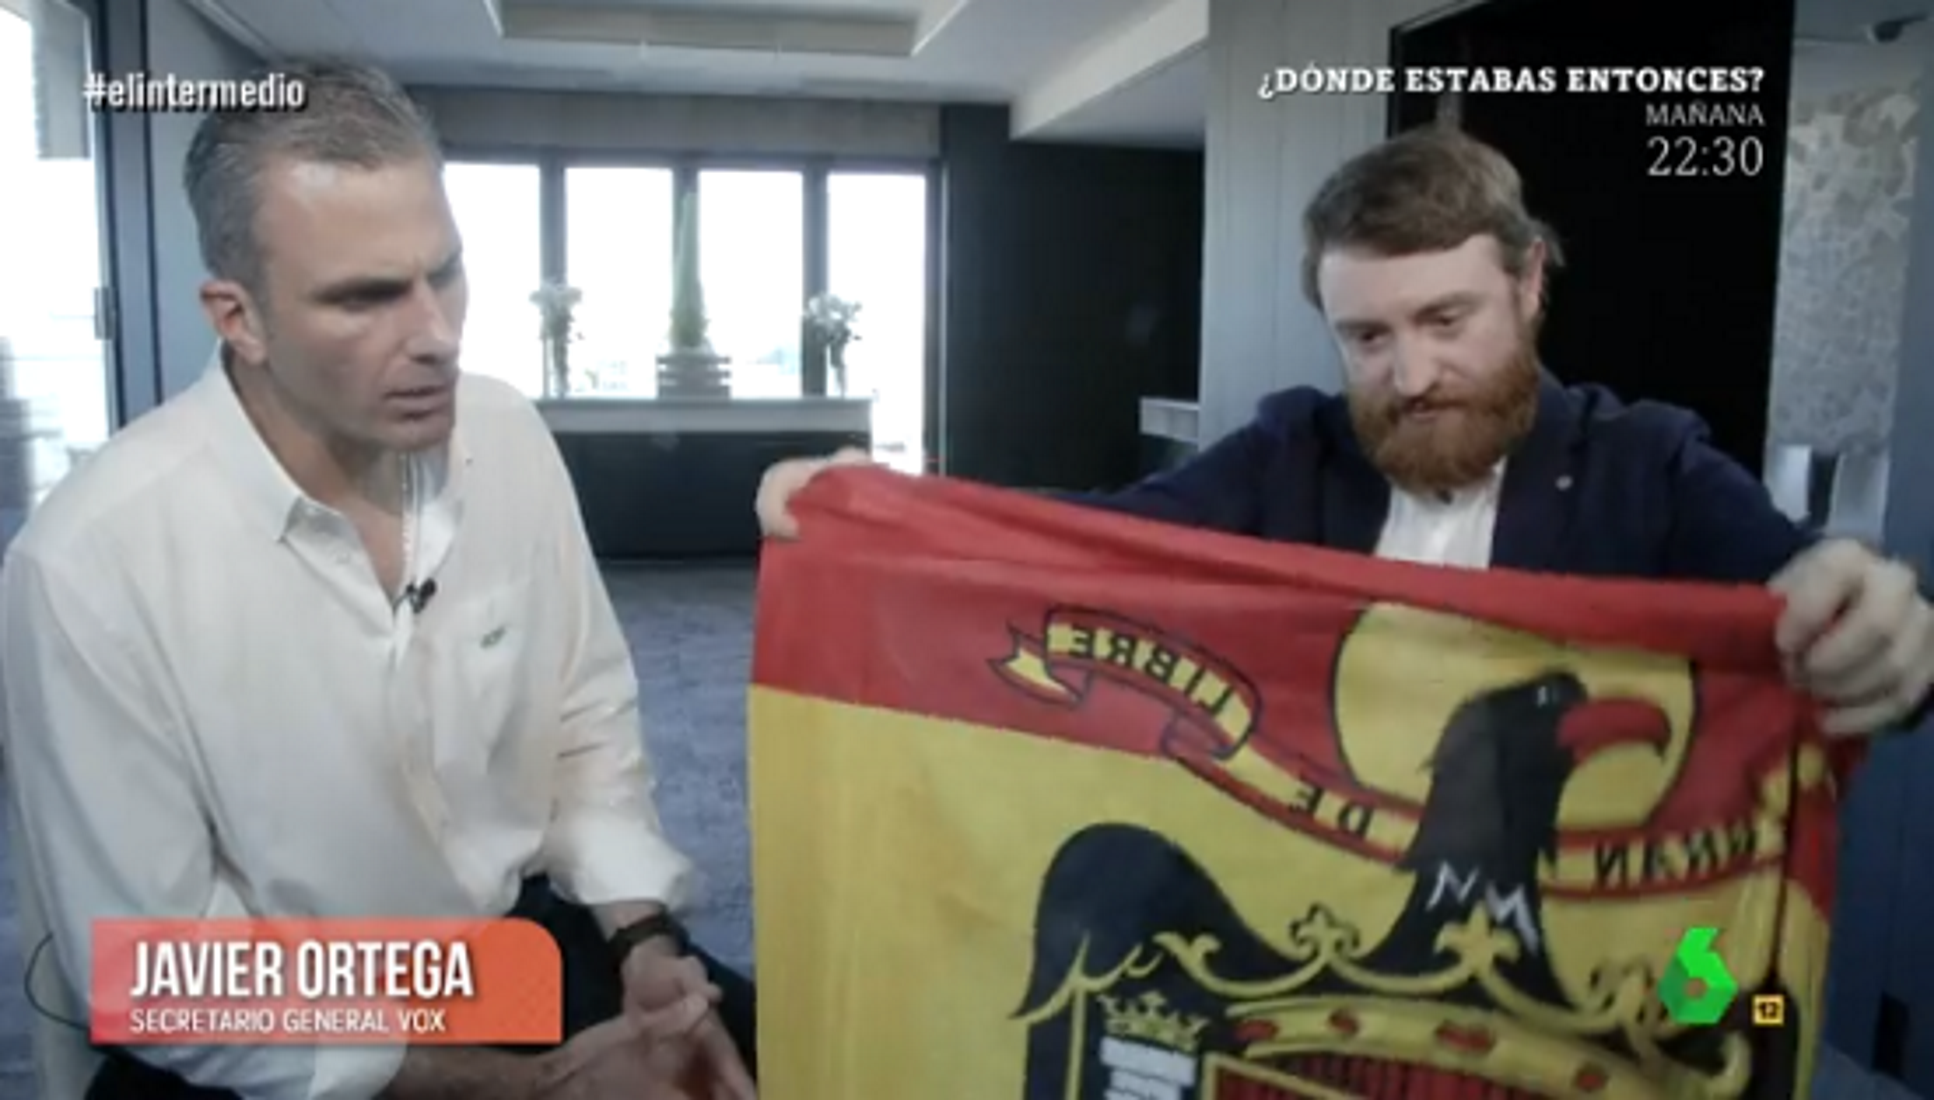 ‘El Intermedio’ ridiculitza el líder de VOX i li regala una bandera franquista